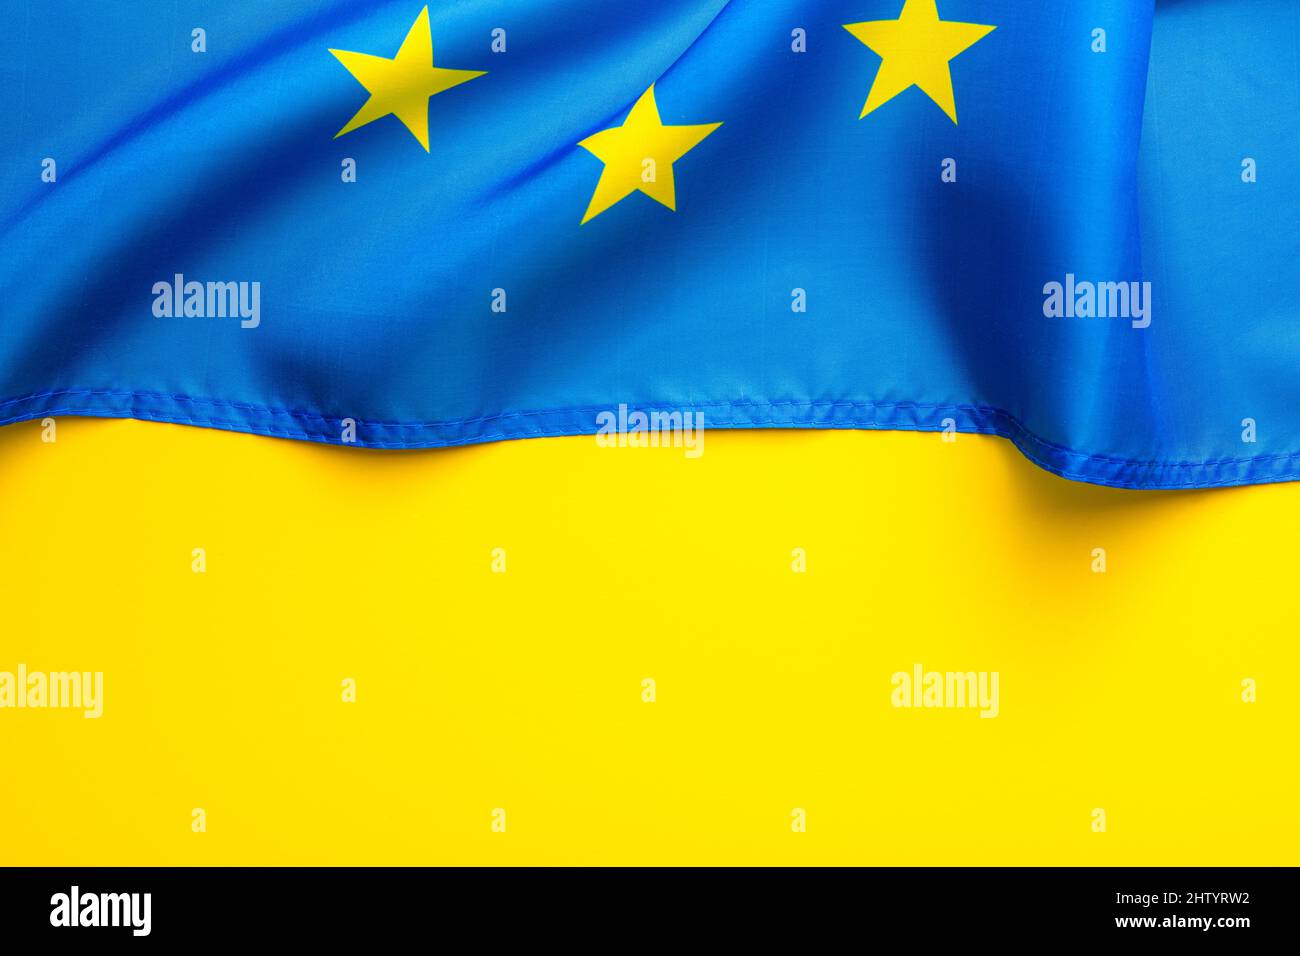 Drapeau ukrainien créé à partir du drapeau de l'Union européenne. La partie du drapeau de l'UE. Banque D'Images